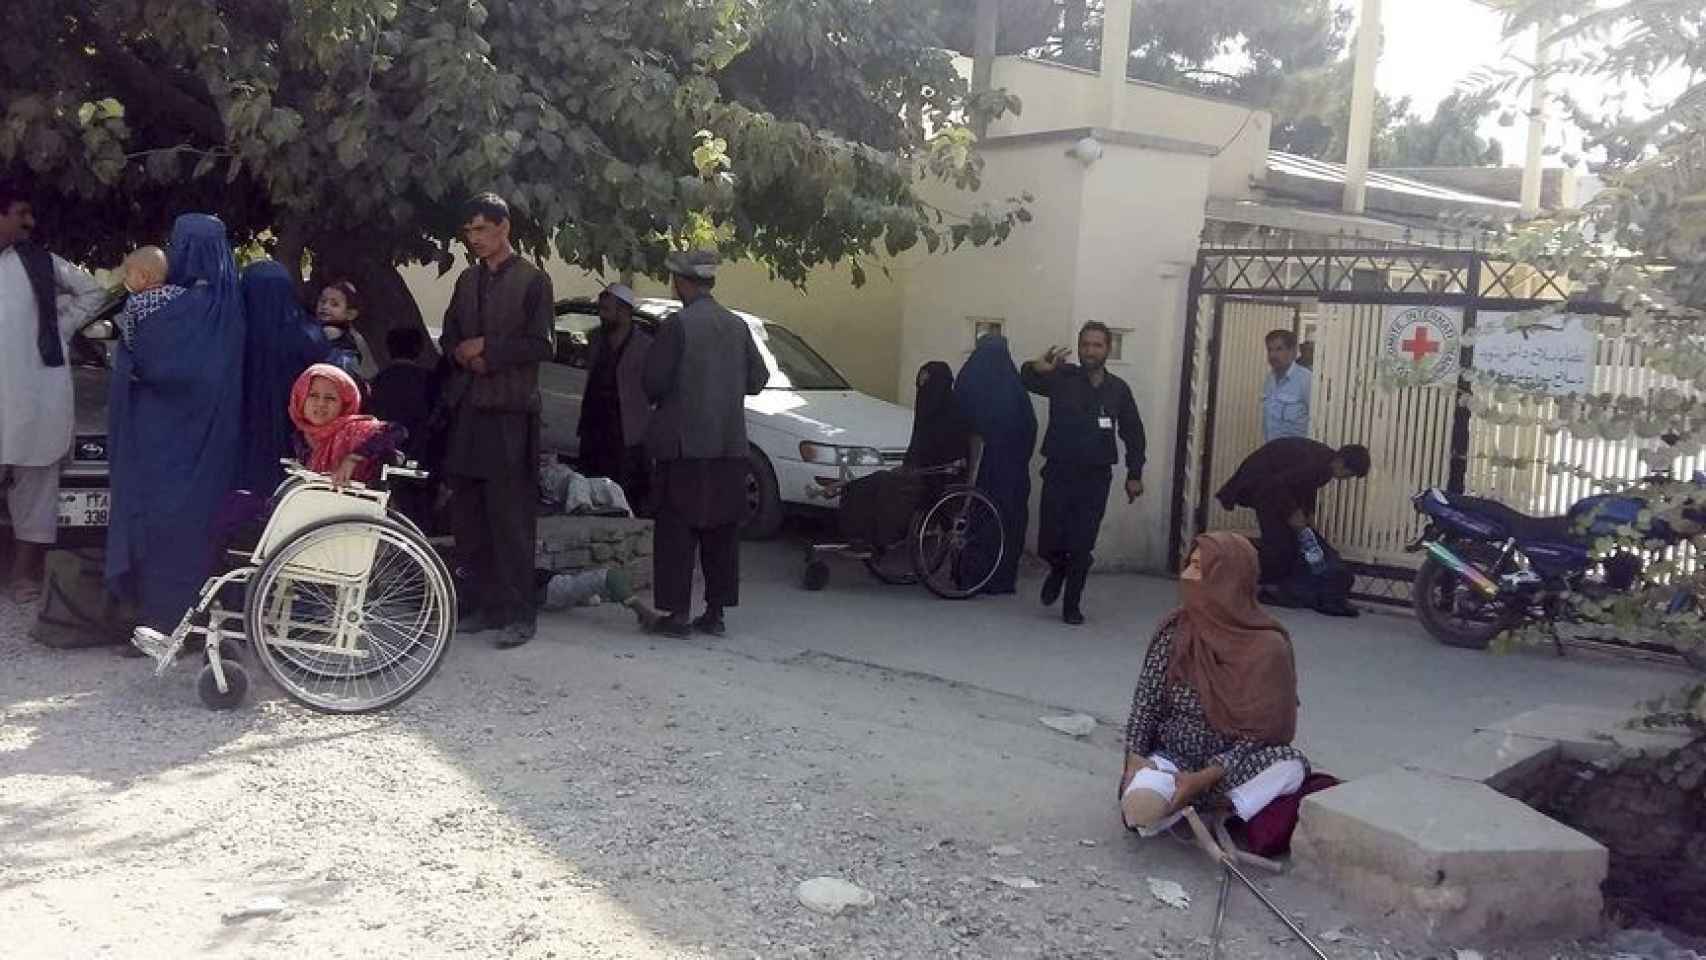 lEl centro de rehabilitación de Mazar-e-Sharif de Cruz Roja tras un ataque.